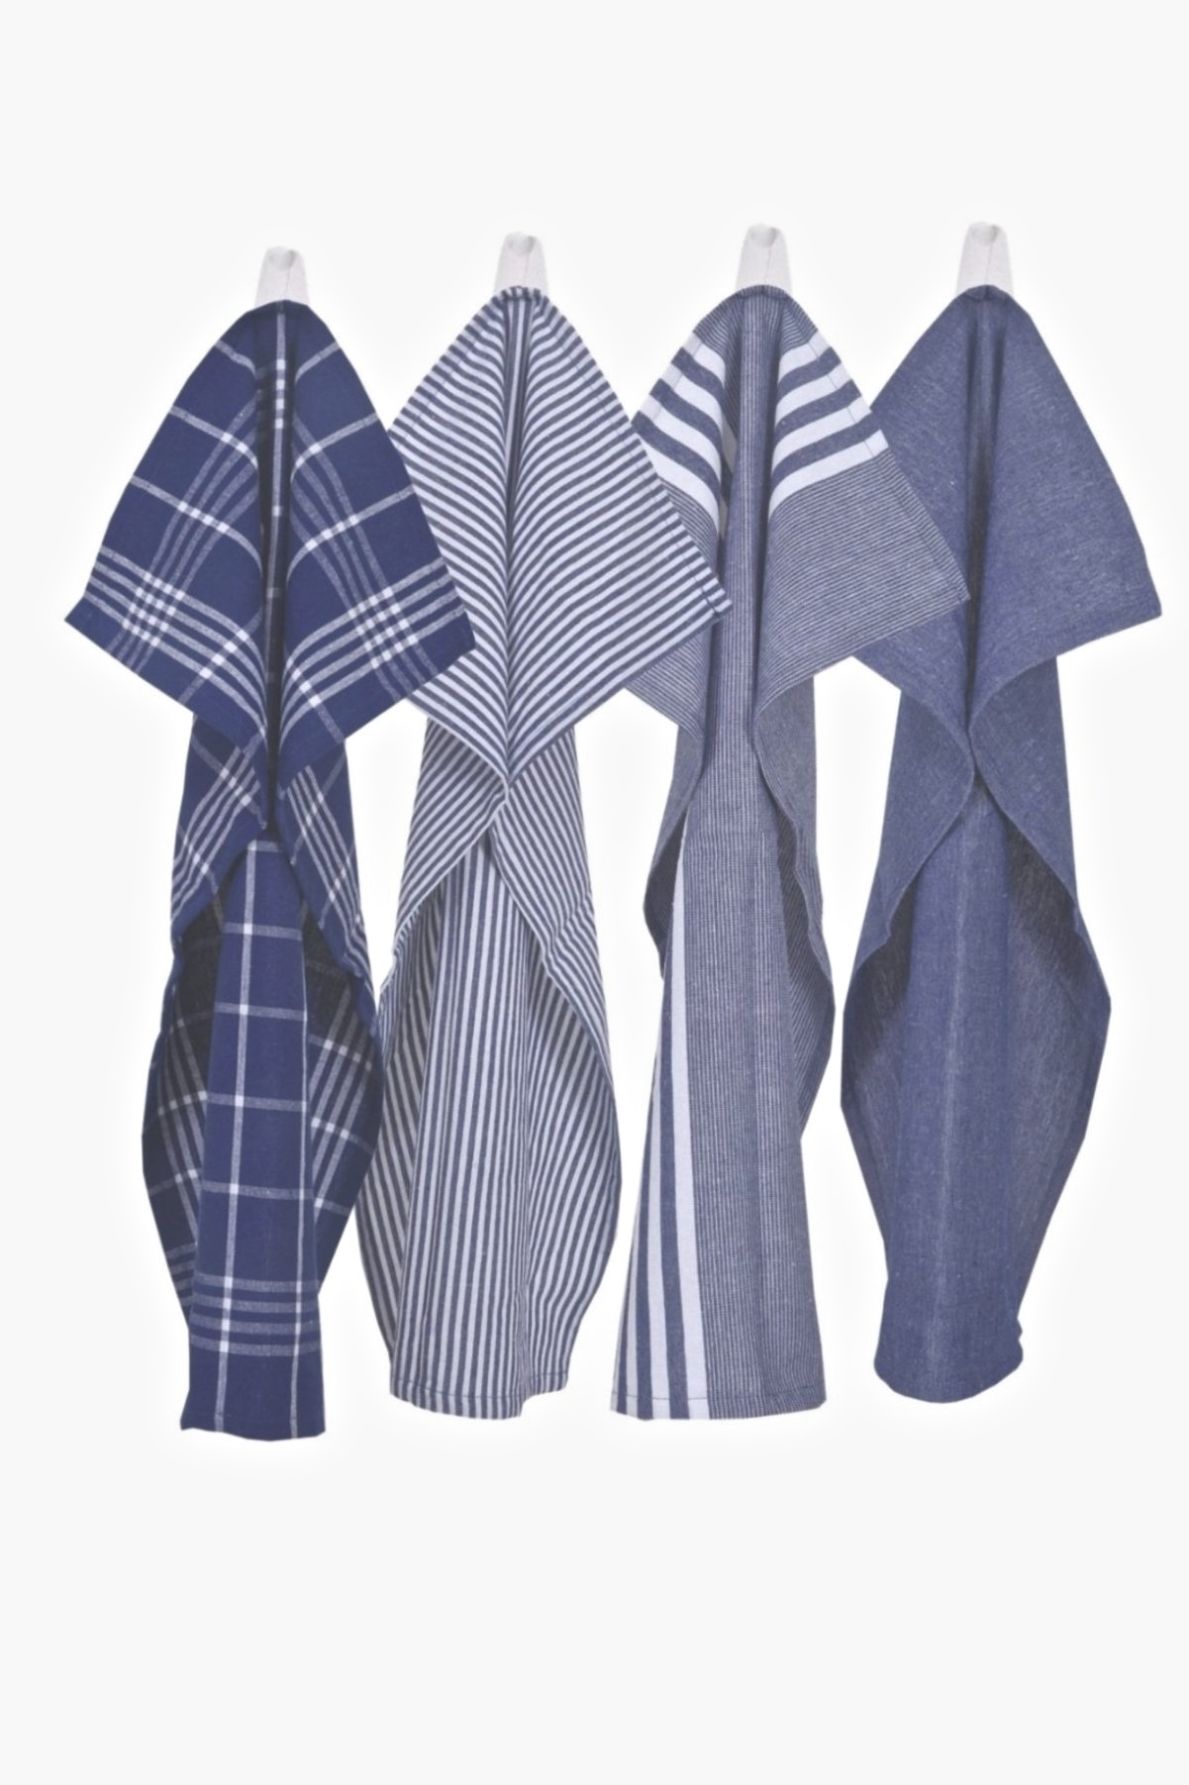 Kökshandduk från Classic textile i återvunna textilier. Färg: Blå och vitrutig.